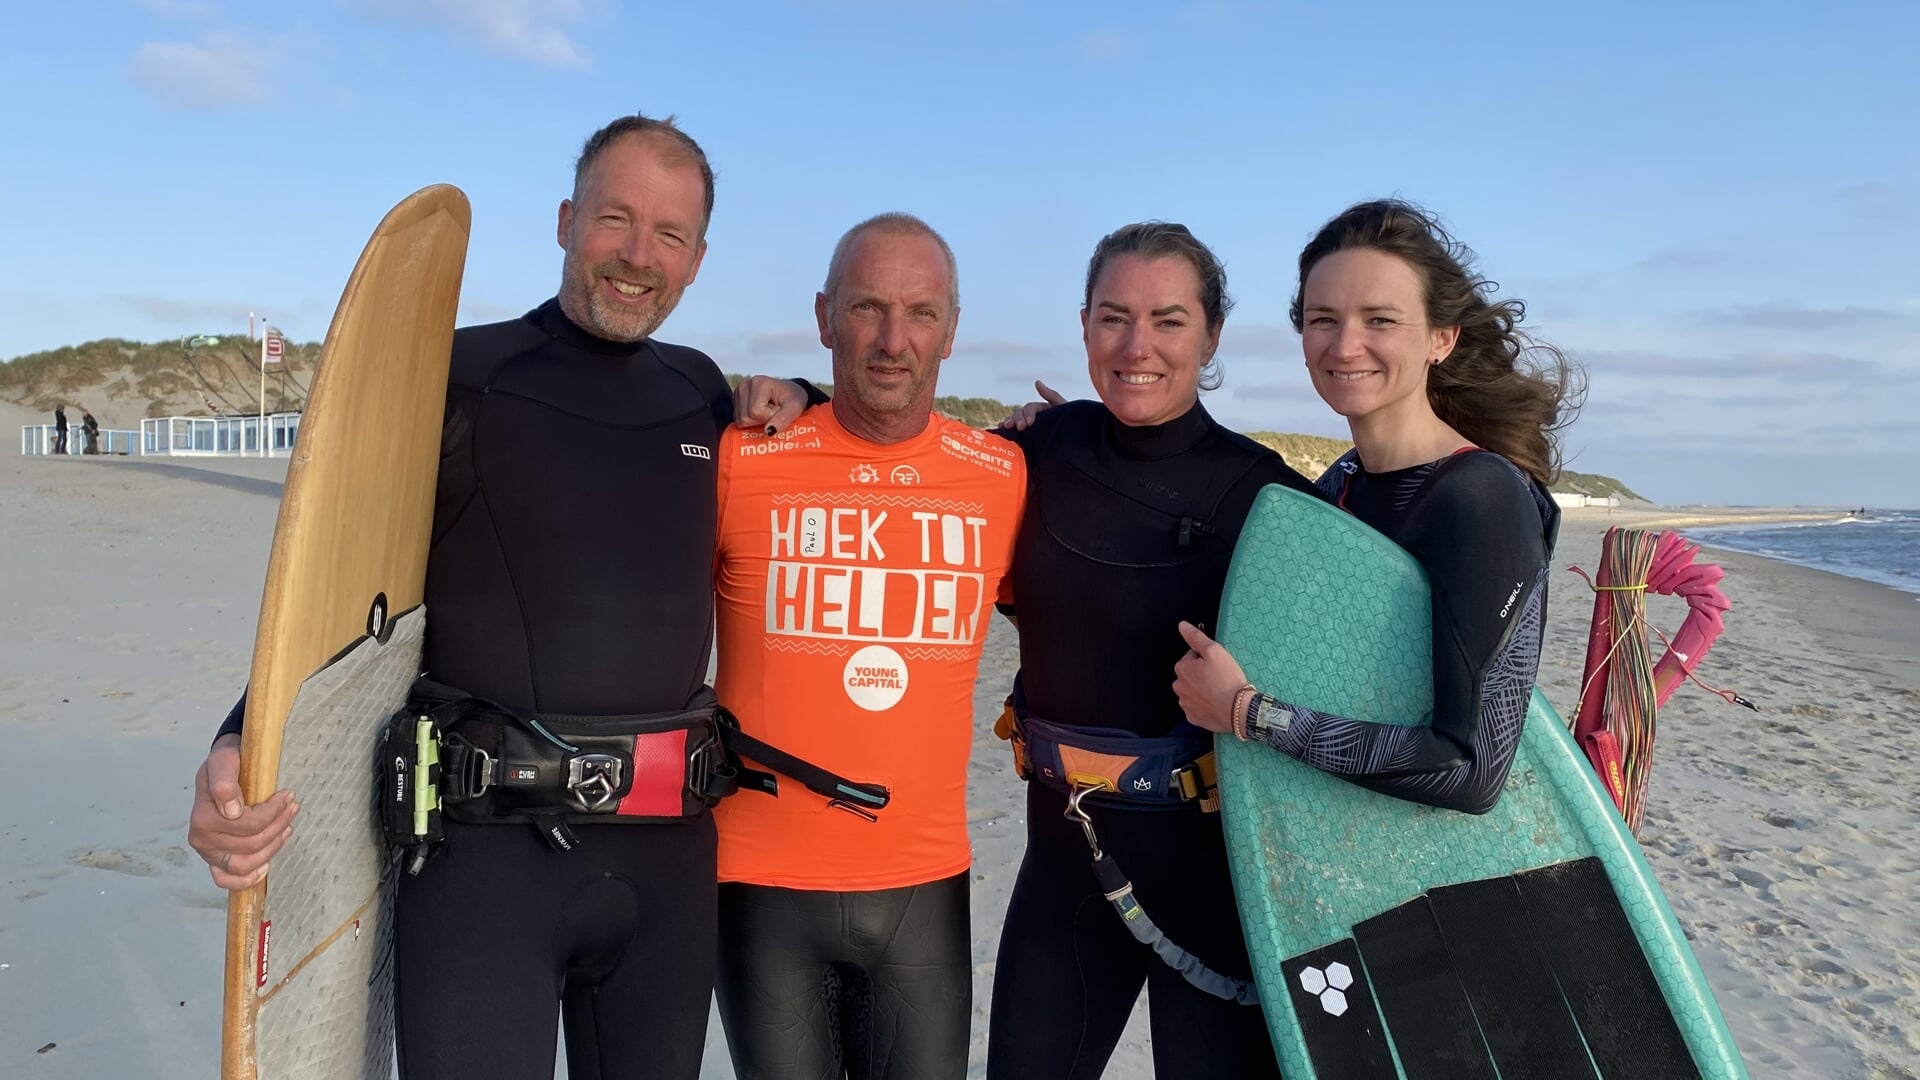 Jacco van de Ree, Paul Ottenhof, Anouk van der Burgt en Lora Strck van Schijndel op het strand bij paal 9.